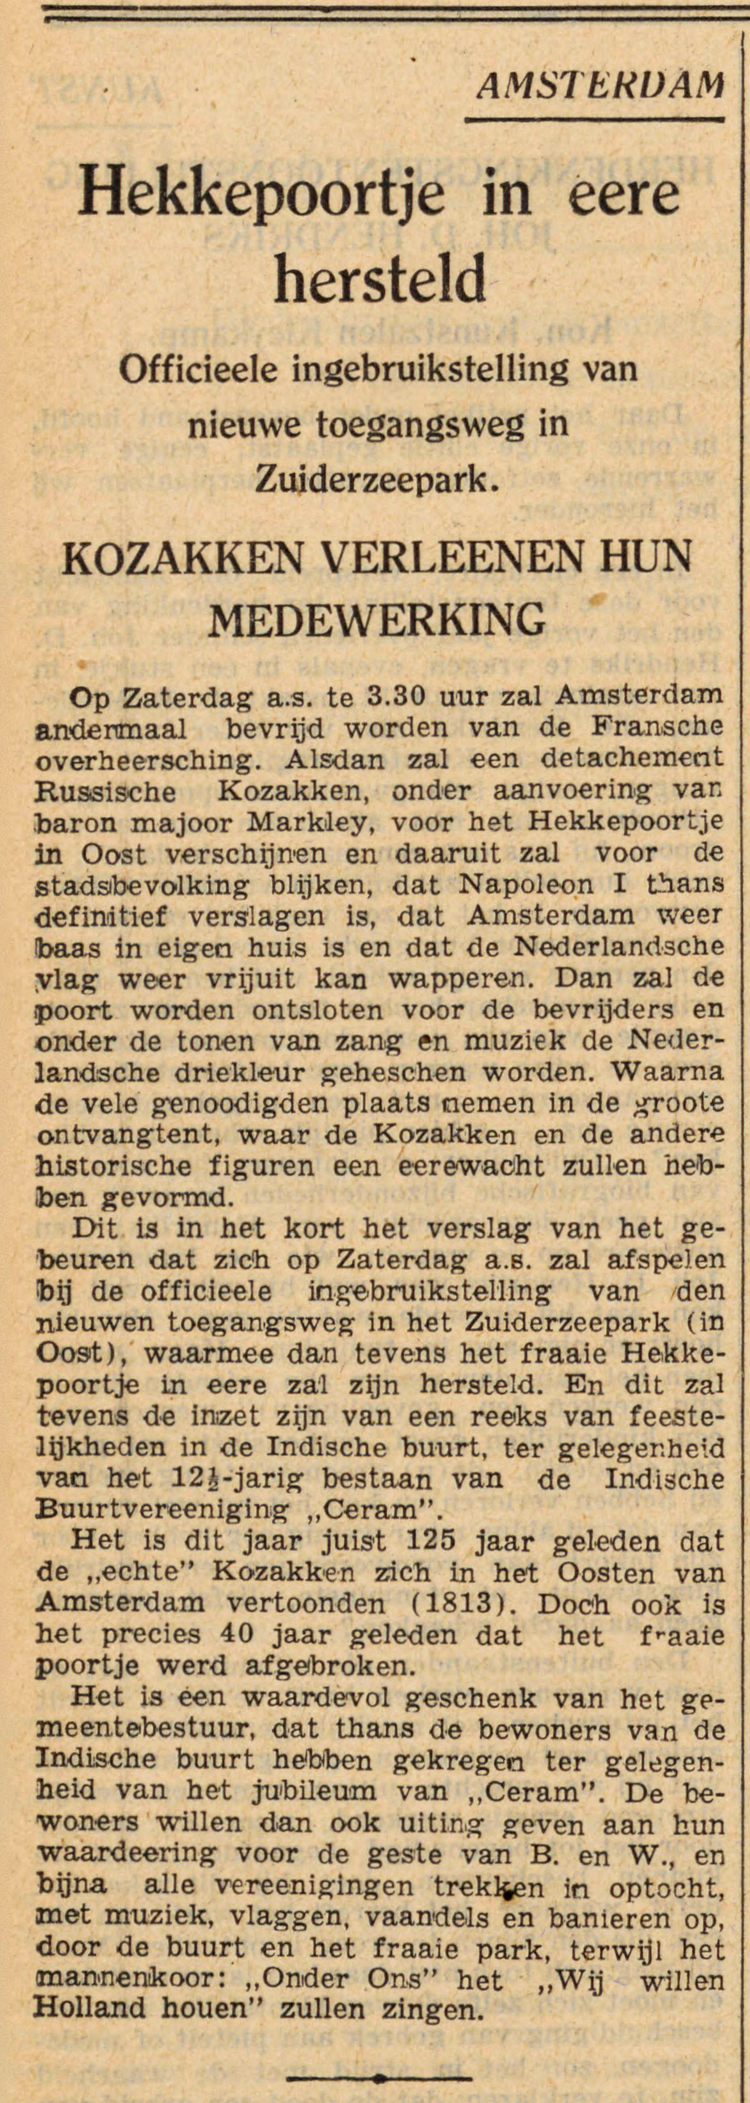 23 augustus 1938 - Hekkepoortje in eere hersteld  